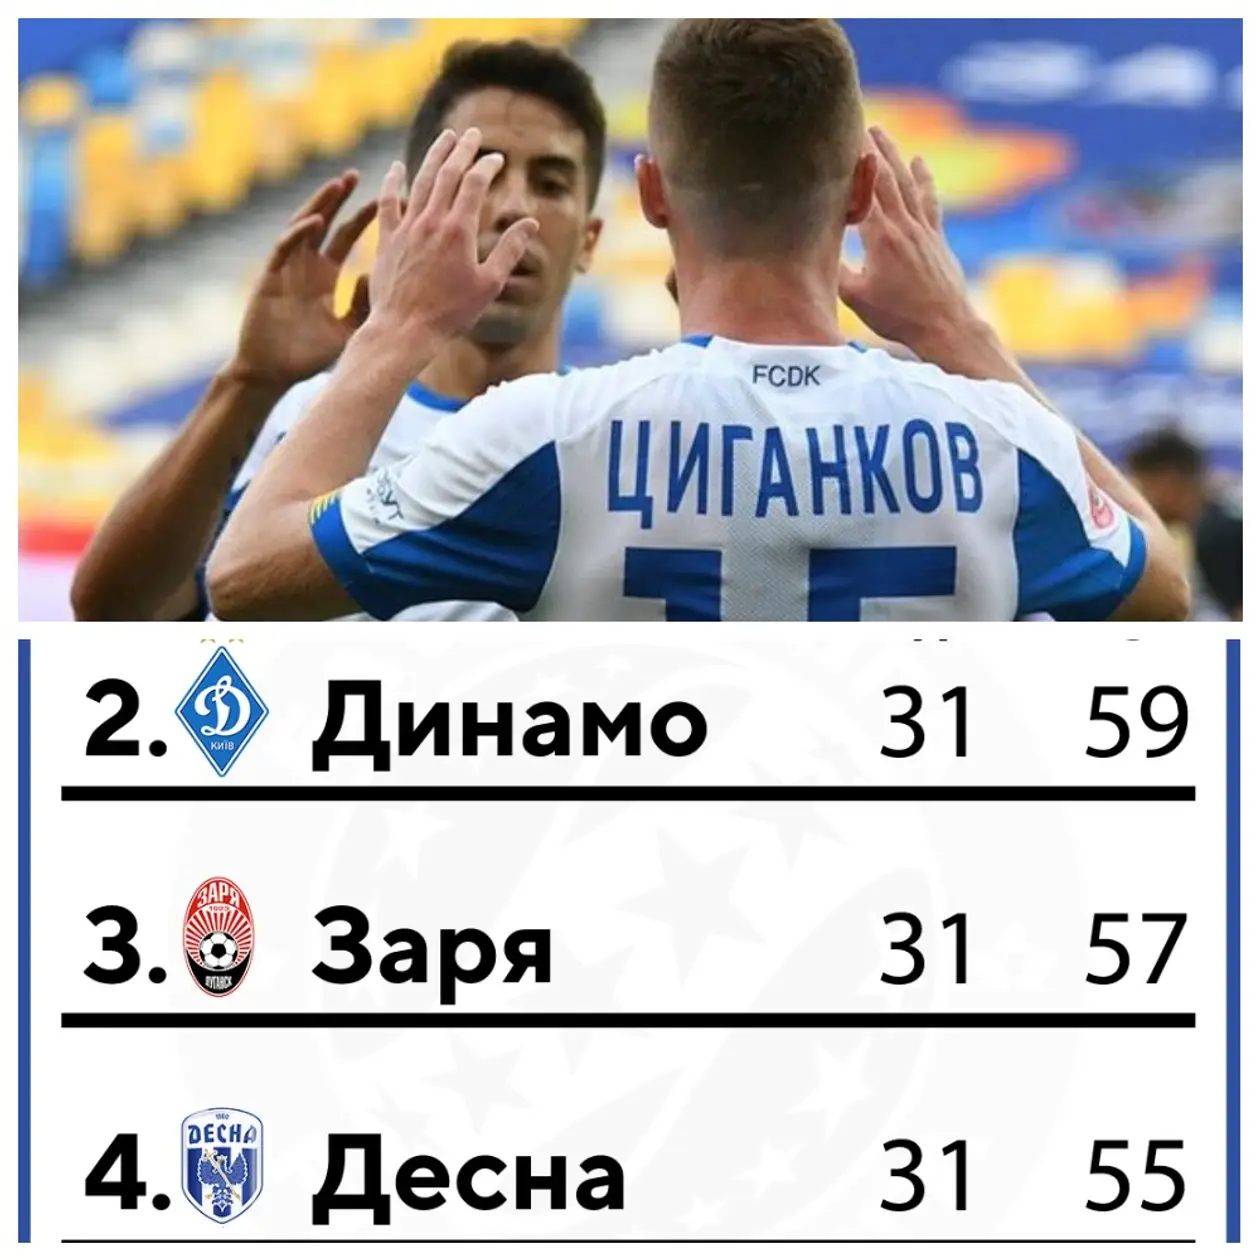 Саныч – Киев в Лиге чемпионов, Ахметову вопреки